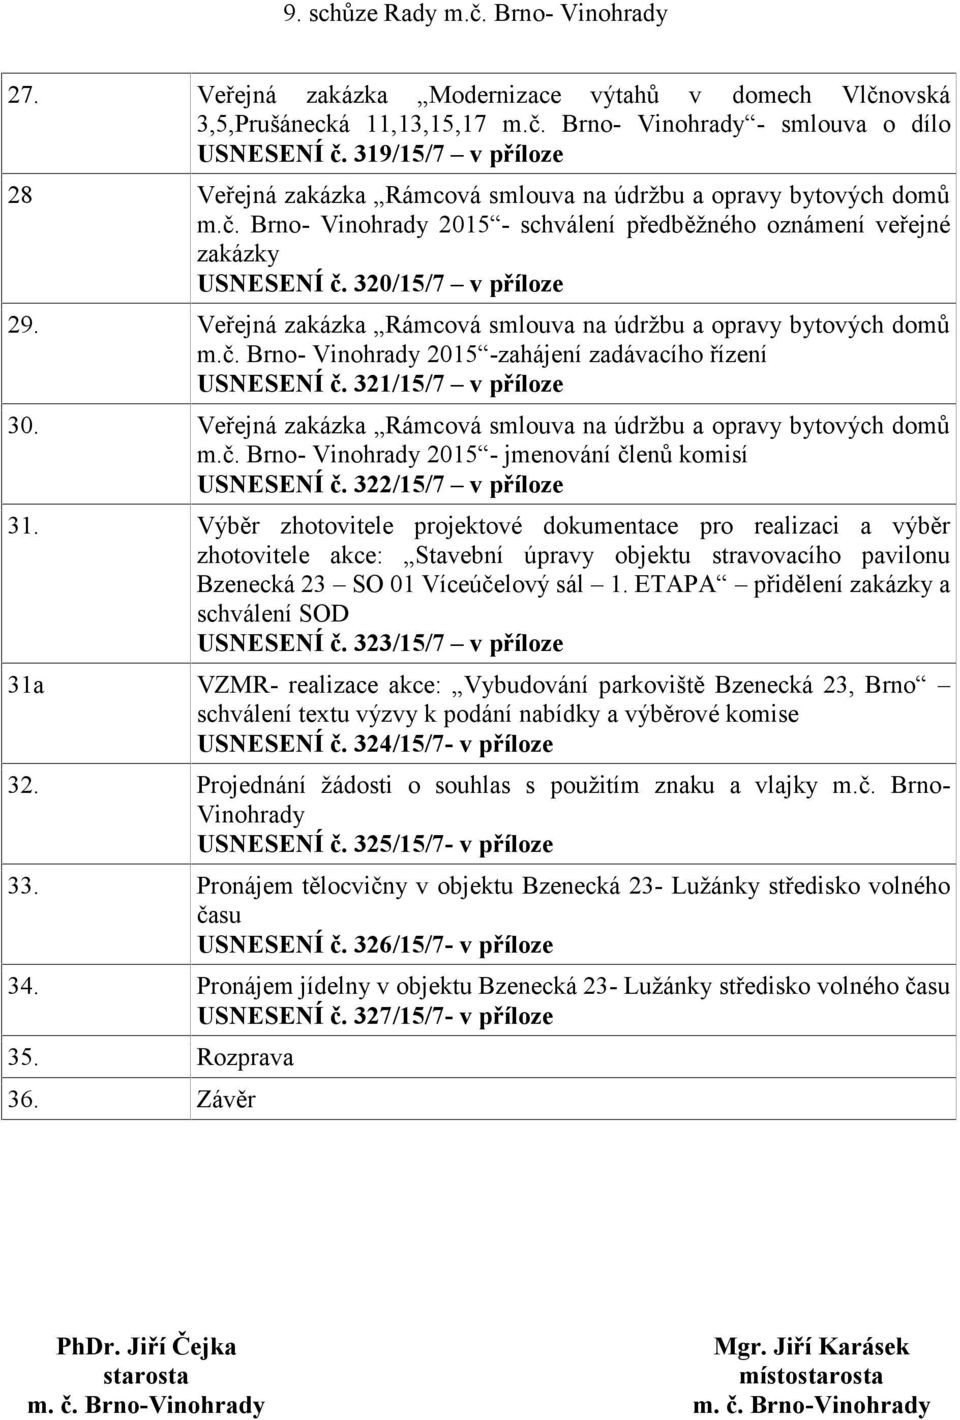 Veřejná zakázka Rámcová smlouva na údržbu a opravy bytových domů m.č. Brno- Vinohrady 2015 -zahájení zadávacího řízení USNESENÍ č. 321/15/7 v příloze 30.